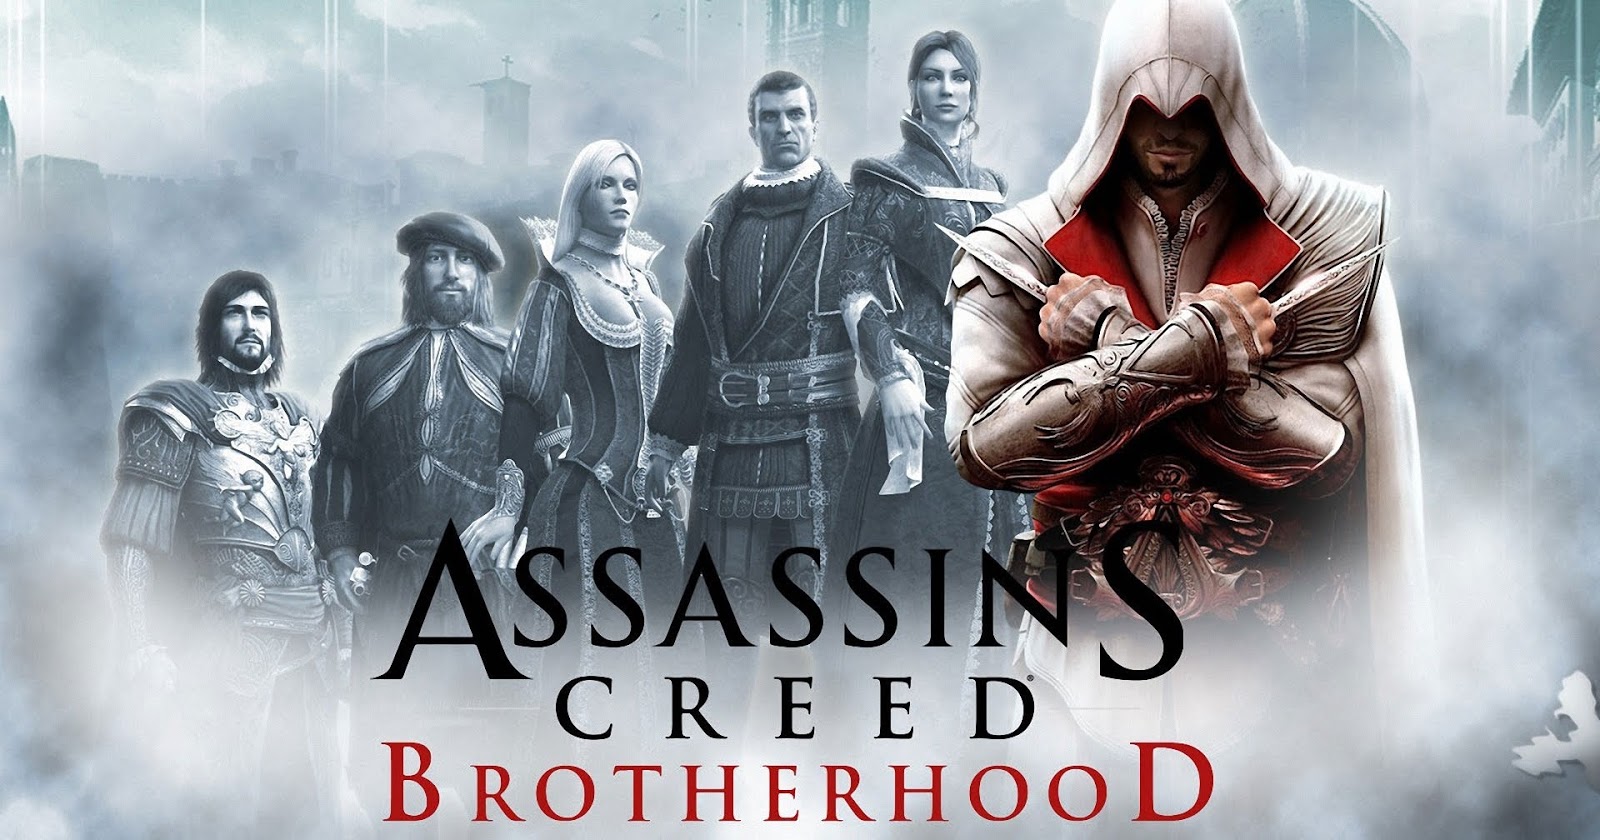 تحميل لعبة اسانس كريد Assassin’s Creed Brotherhood للكمبيوتر برابط مباشر